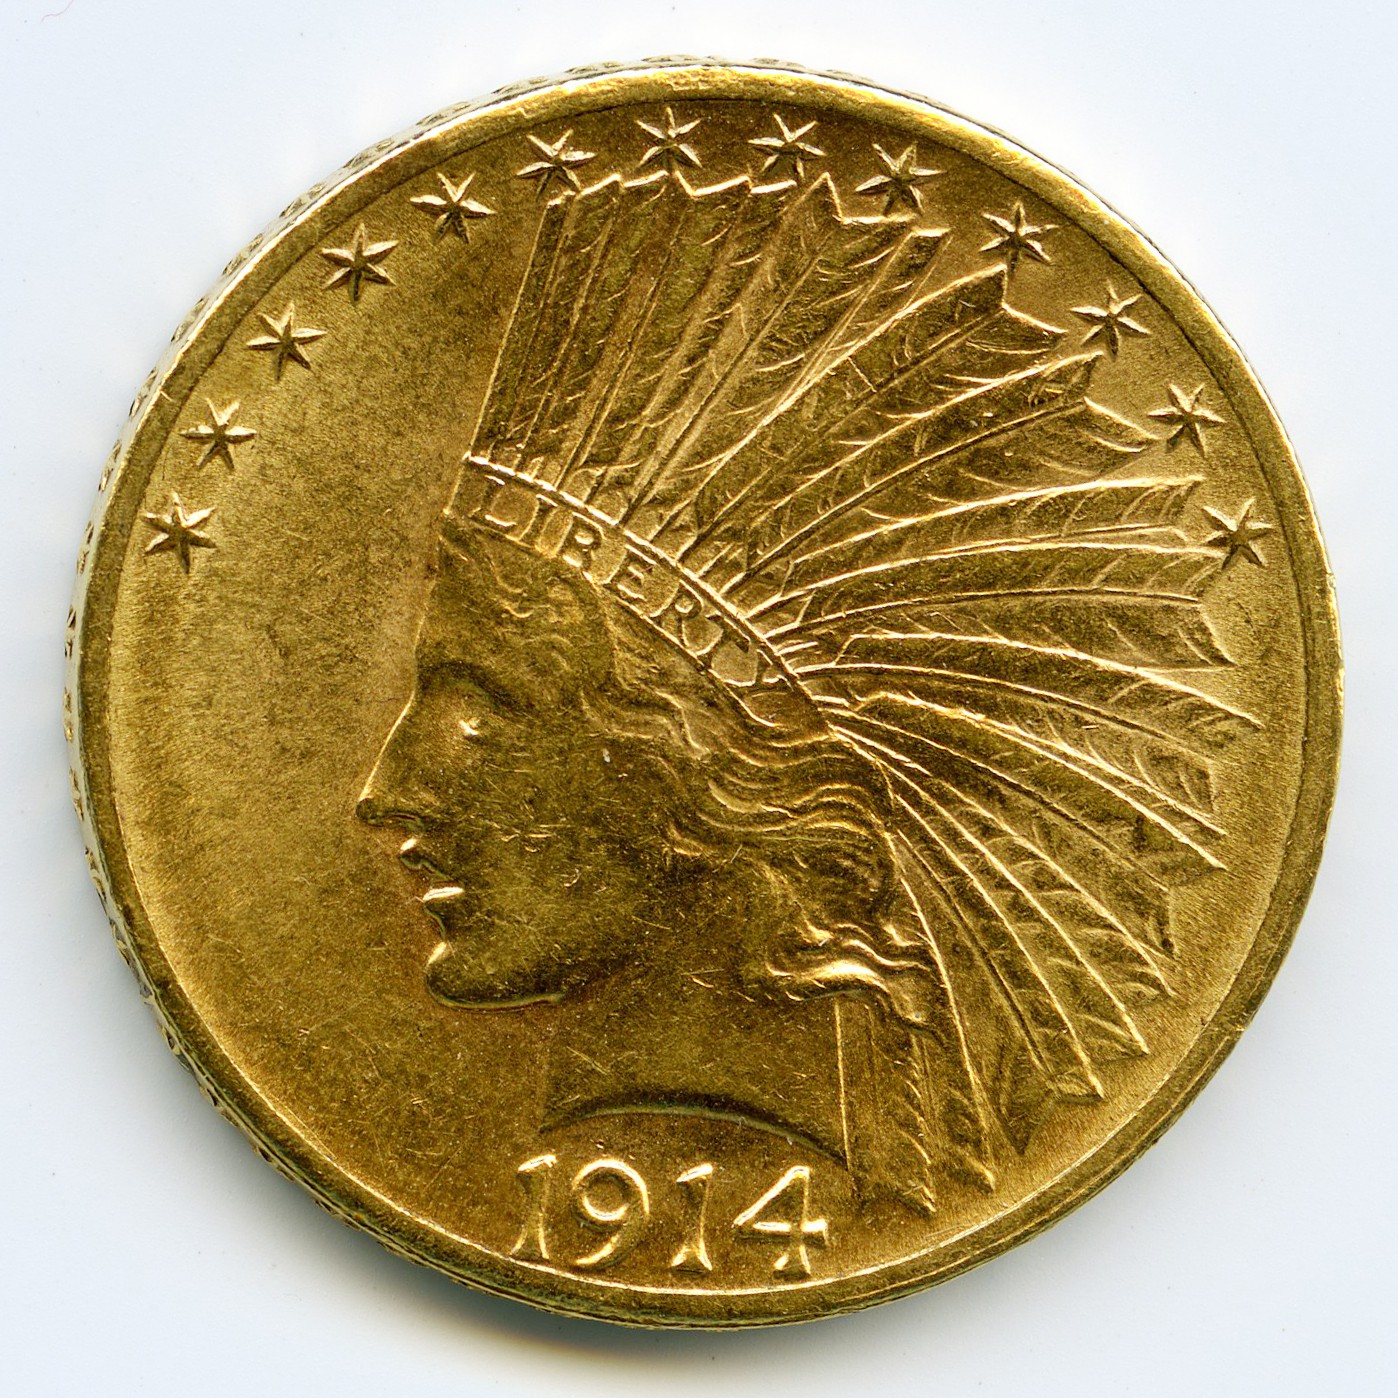 USA - 10 Dollars - 1914 D avers